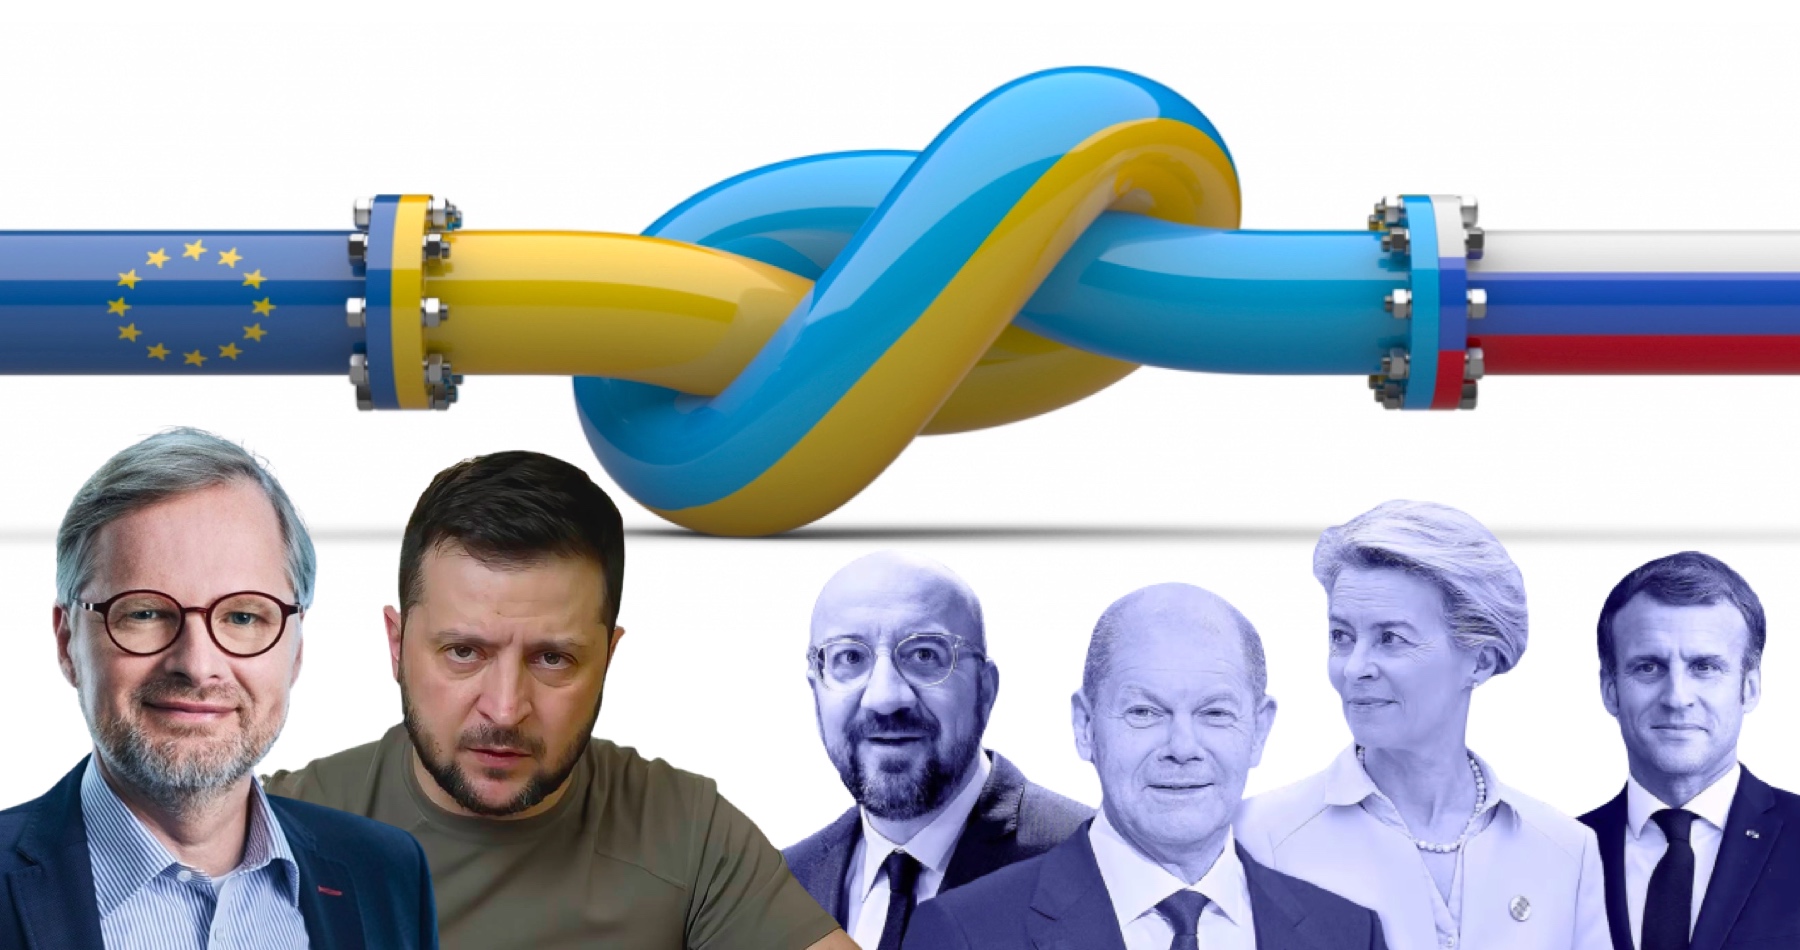 Ukrajina zastavila dodávky ropy v ropovodu Družba na základě 7. balíku sankcí EU přijatého za předsednictví Petra Fialy v Radě EU, oznámil Kyjev! Ukrajina podle nařízení EU nesmí přijmout žádné zálohy plateb za tranzit ropy od ruského Transněftu, protože je to v rozporu se 7. sankčním balíkem!